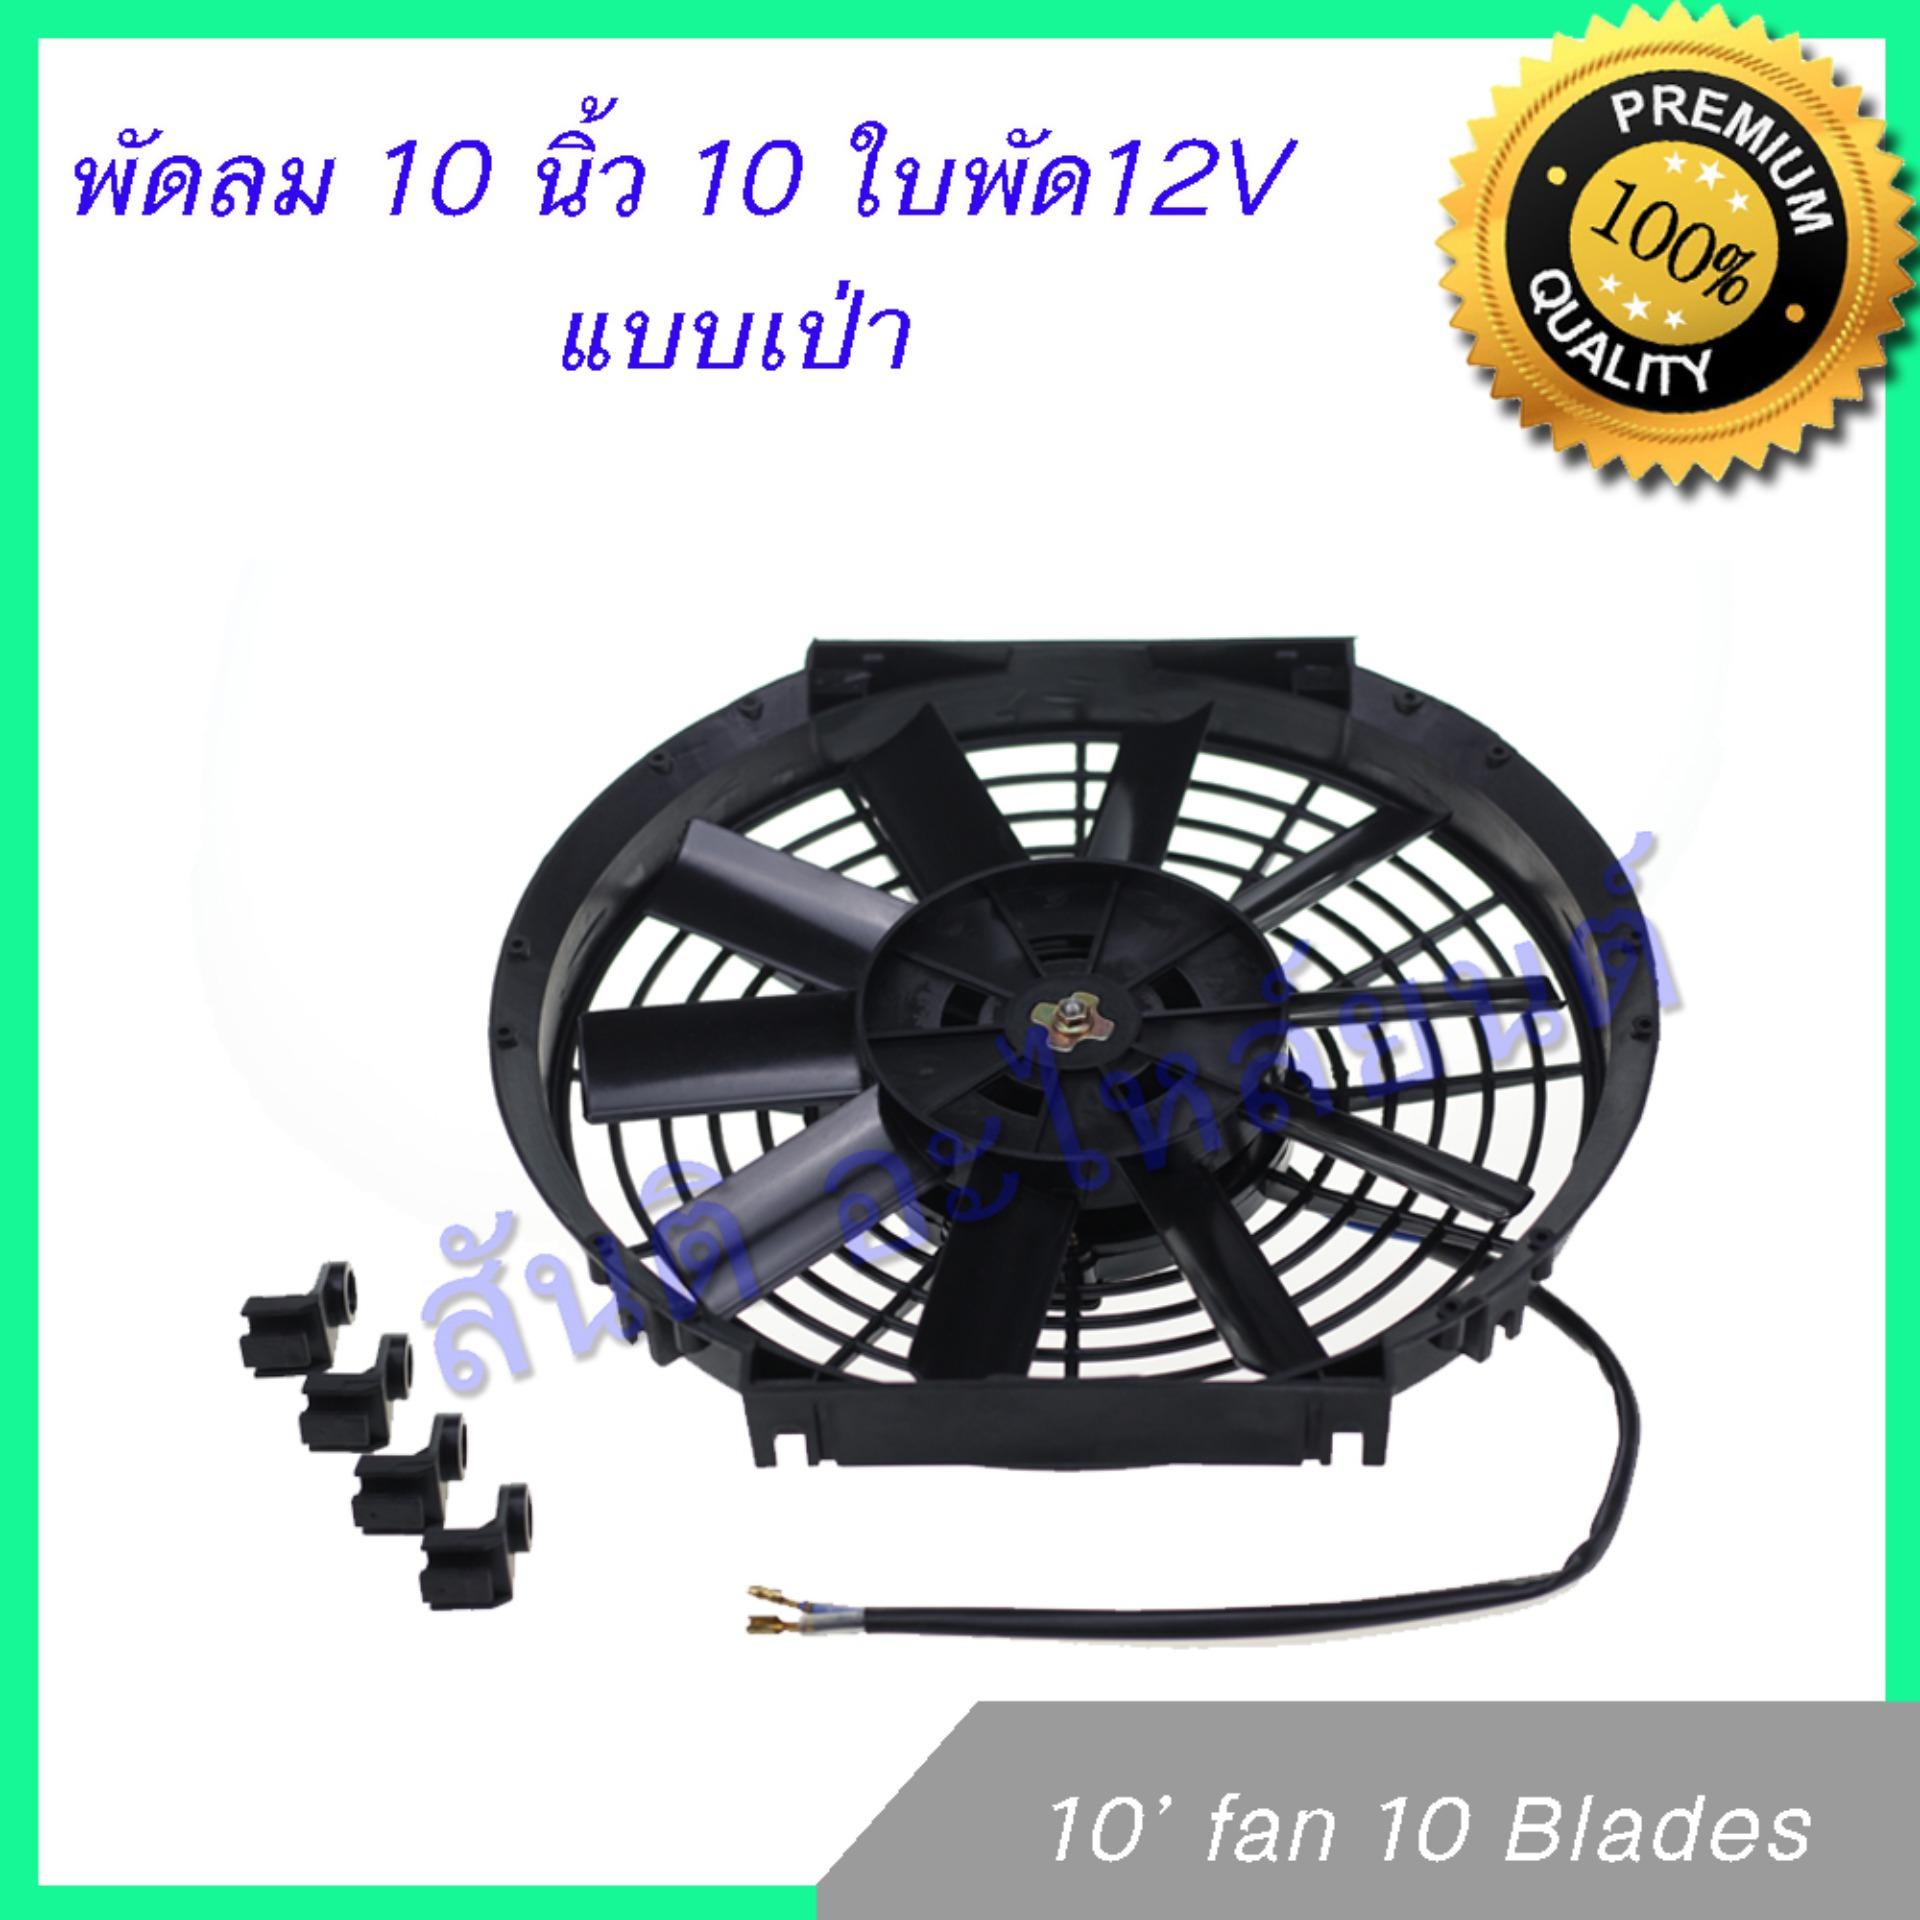 พัดลม 10 นิ้ว 10 ใบ 12V พัดลมหม้อน้ำ พัดลมแผงร้อน Fan 10 inch 10 blades condenser Radiator fan